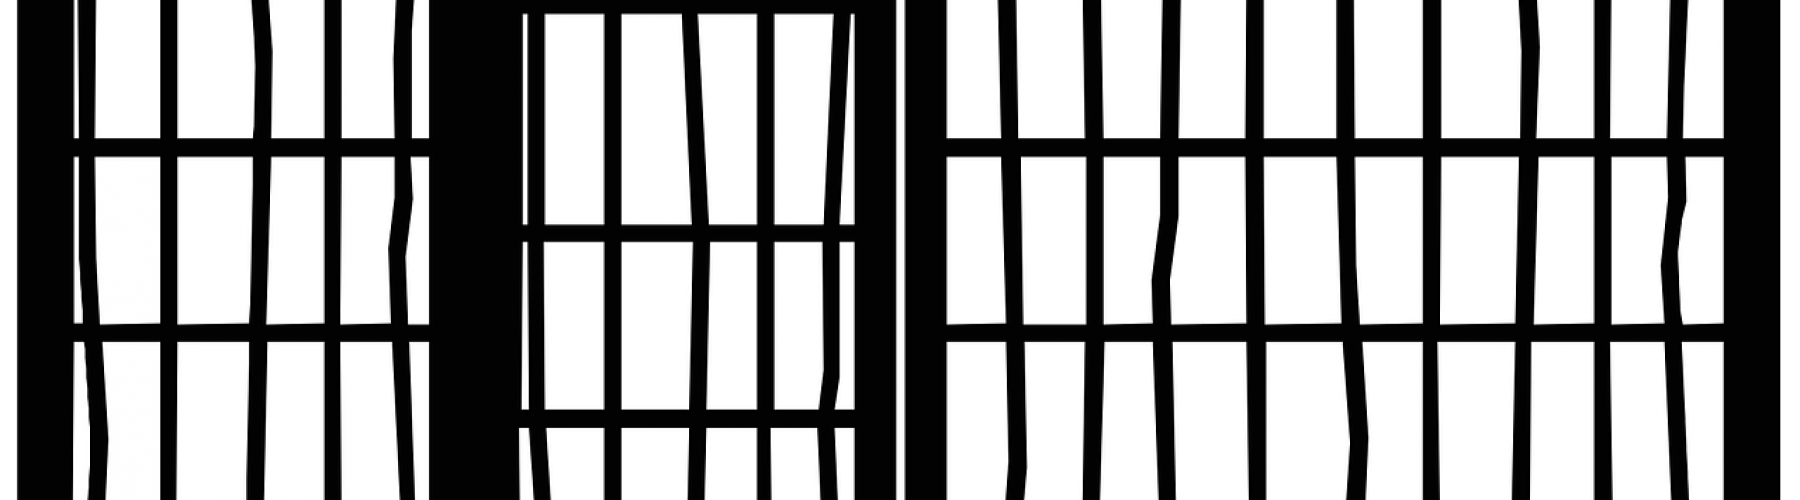 Image de barreaux de prison avec portes et fenêtres en noir et blanc